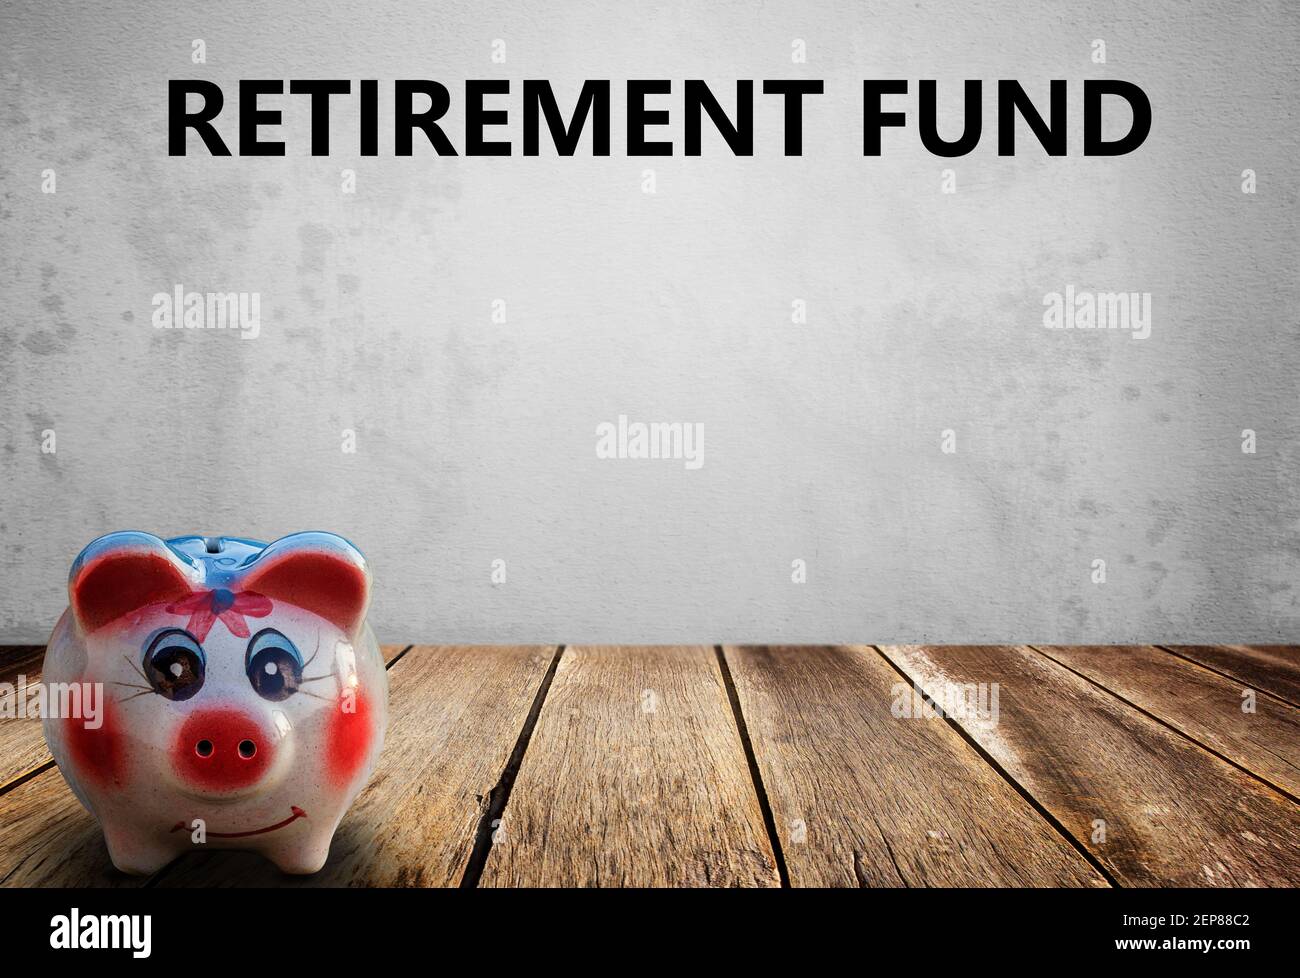 Texto con el Fondo de jubilación, Finanzas, banca, cuenta de ahorro de dinero, rosa piggy banco sobre fondo blanco. Futuro crecimiento de interés compuesto en el ahorro o Foto de stock